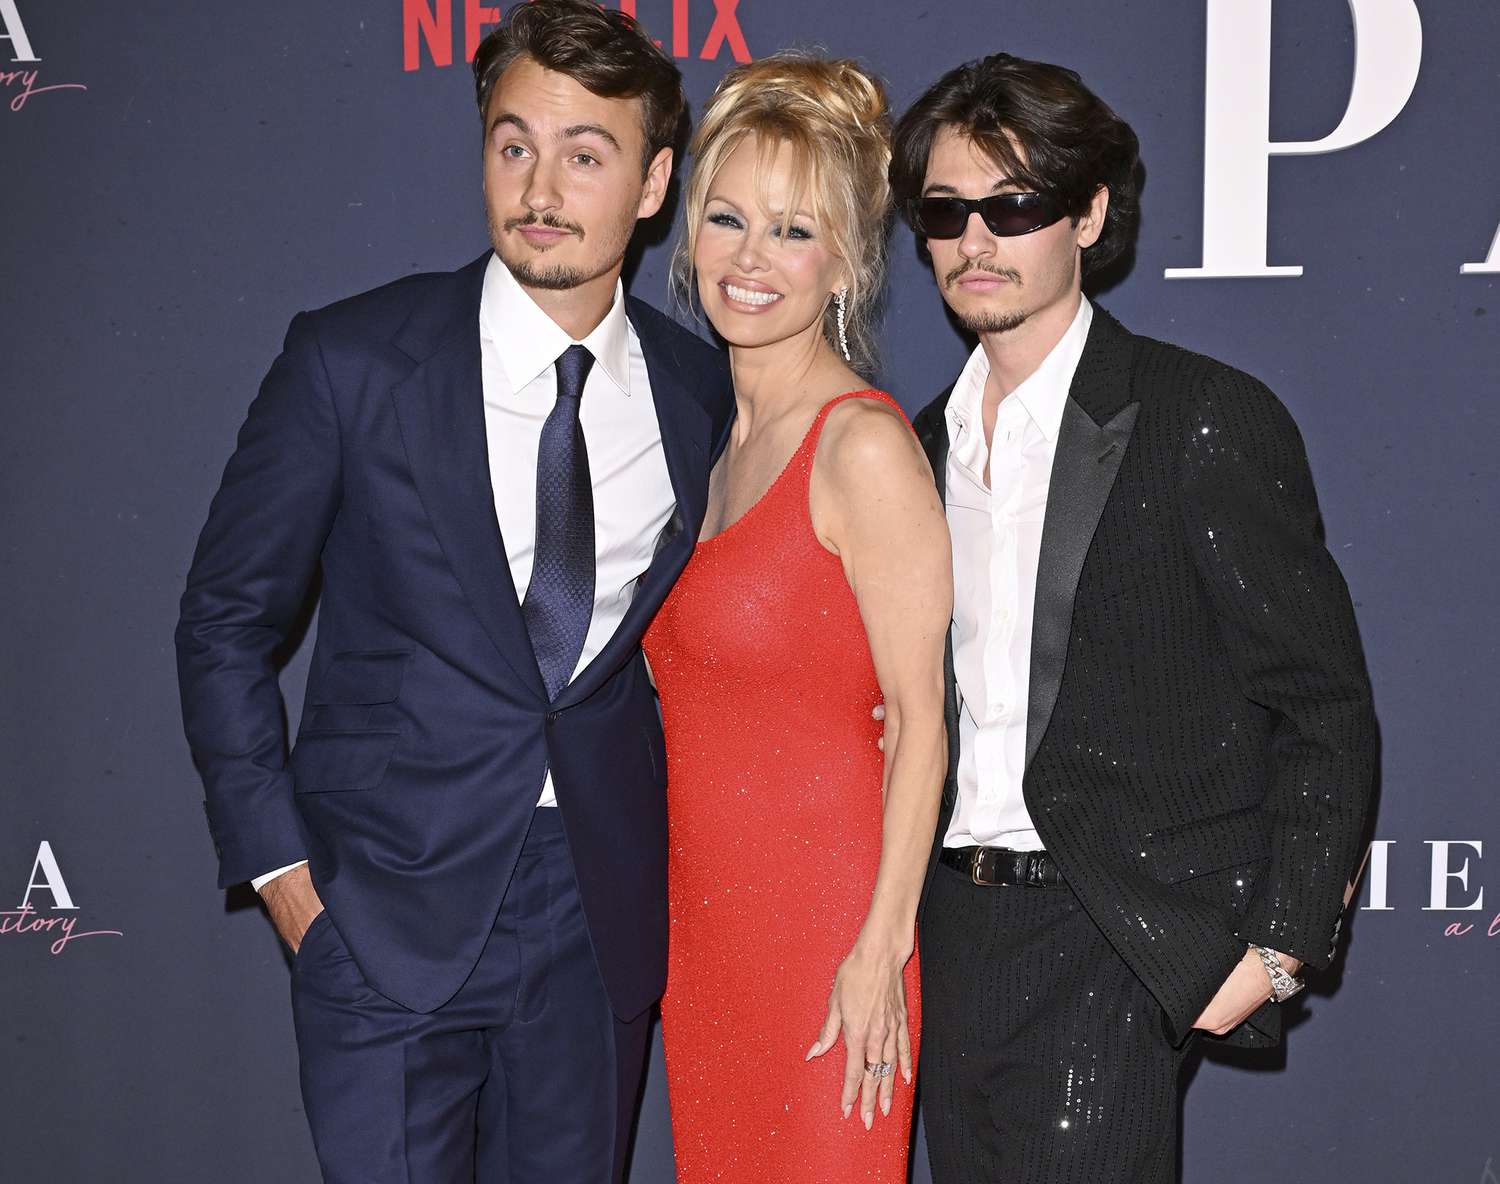 Pamela Anderson Merayakan Film Dokumenter Baru Bersama Putranya, Ditambah Brad Pitt dan George Clooney, Selma Blair, dan Lainnya